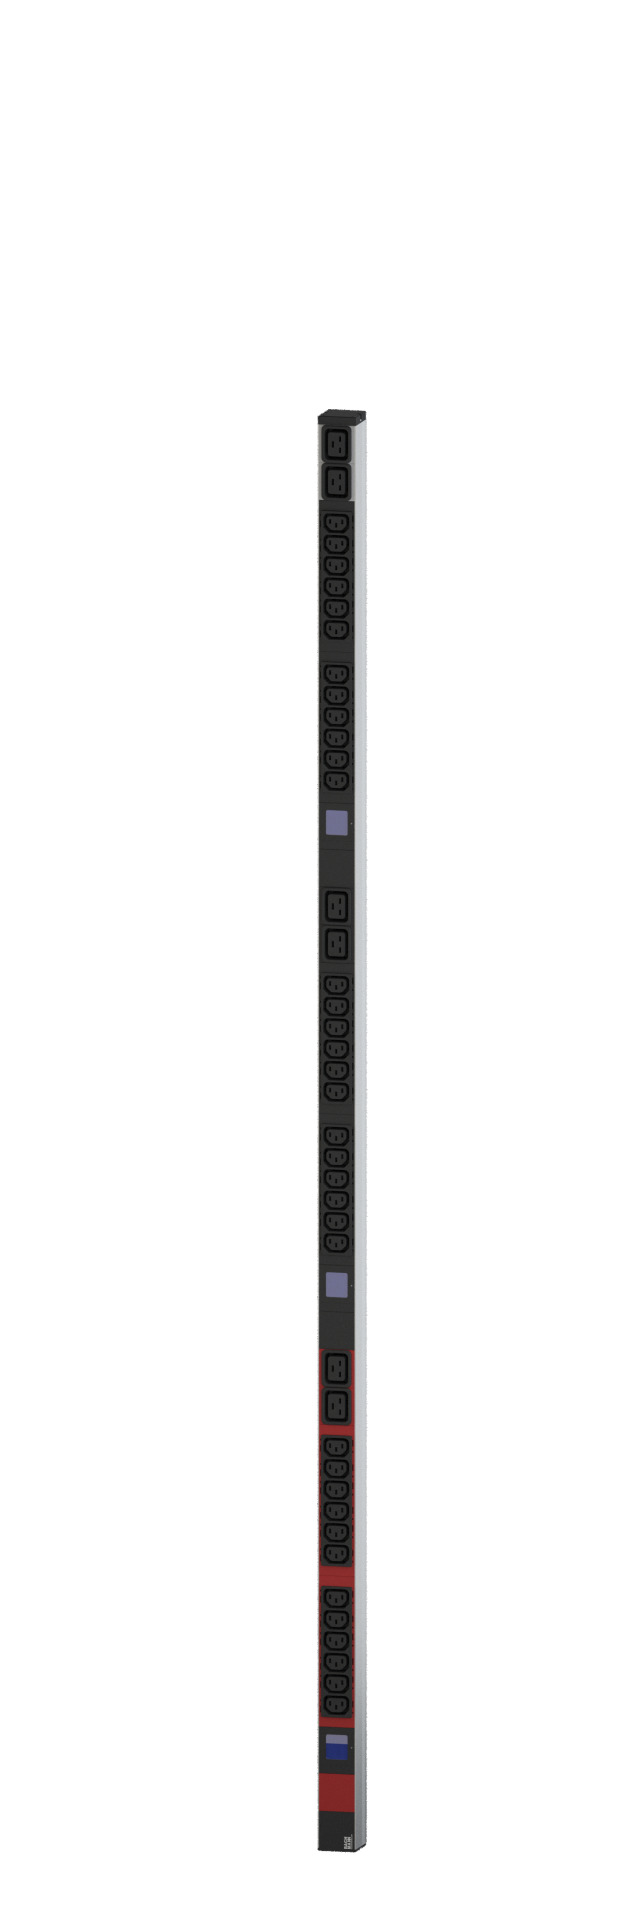 PDU Vertikal BN500 36xC13 6xC19 400V 16A mit Leistungsmessung (Display)